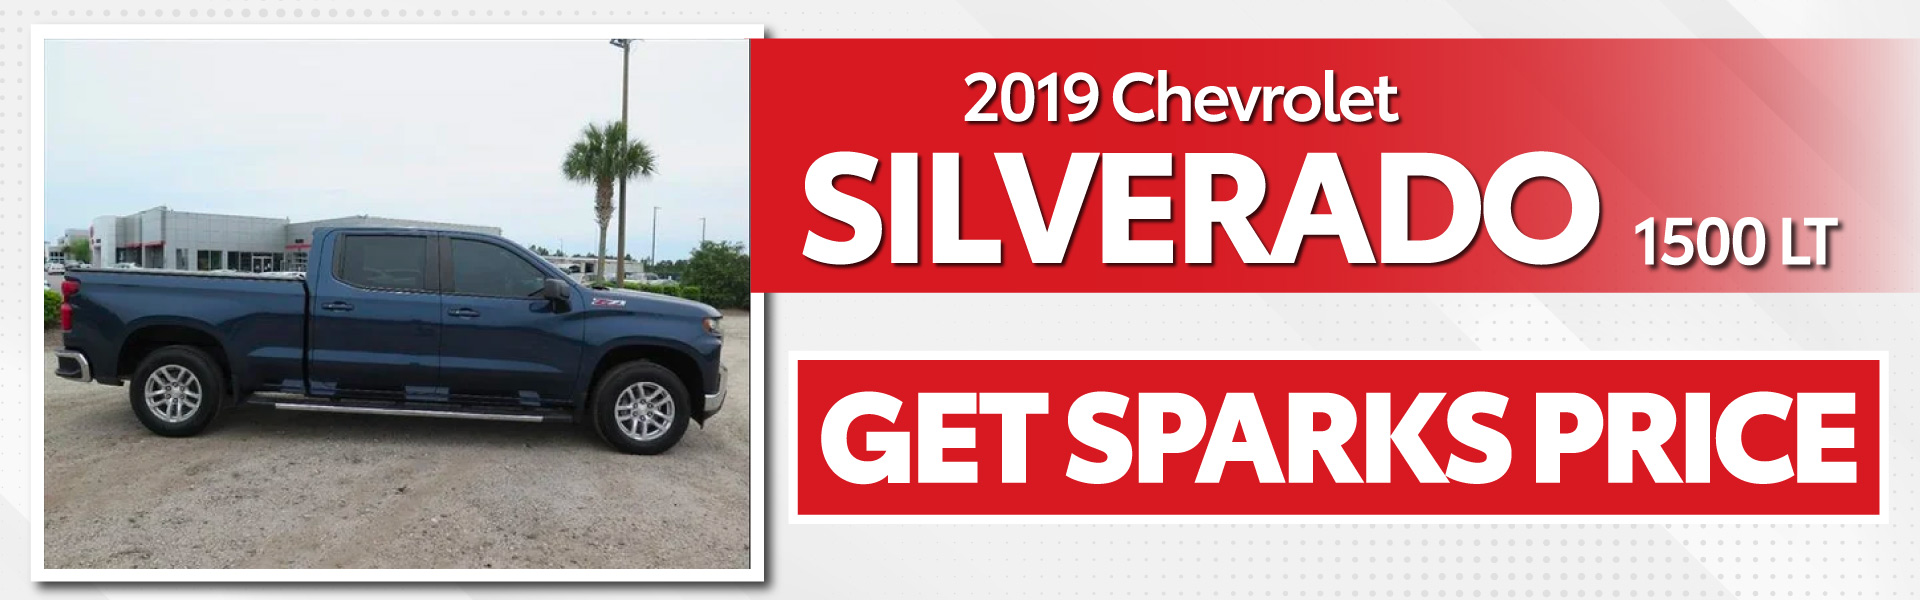 2019 Chevrolet Silverado 1500 LT - Get Sparks Price